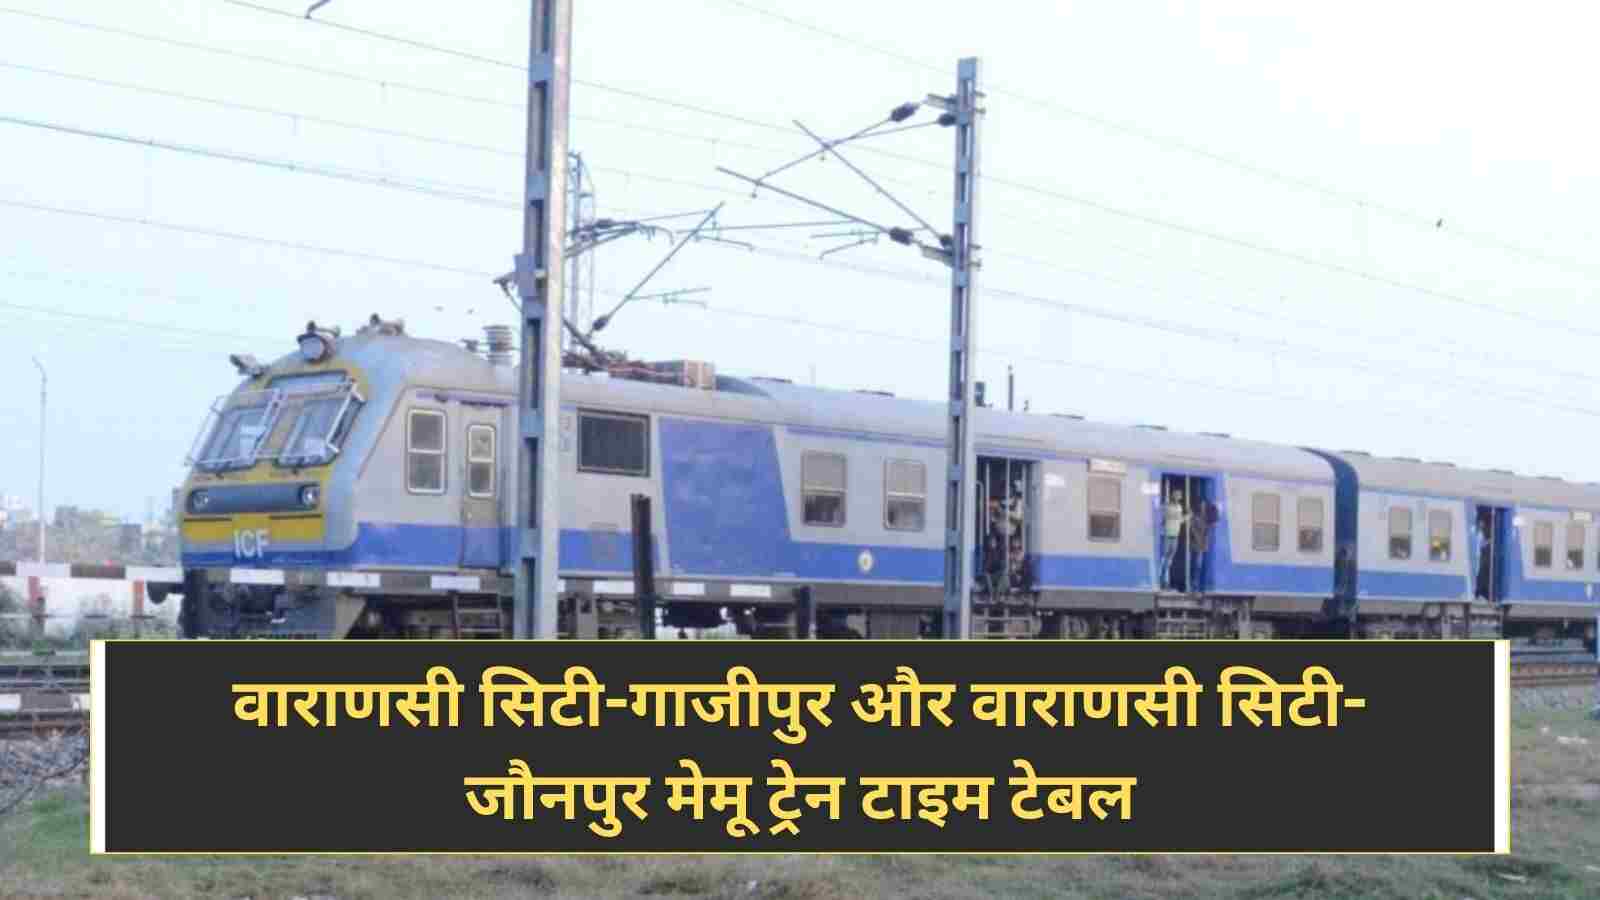 Indian Railway: वाराणसी सिटी-गाजीपुर और वाराणसी सिटी-जौनपुर मेमू ट्रेन टाइम टेबल